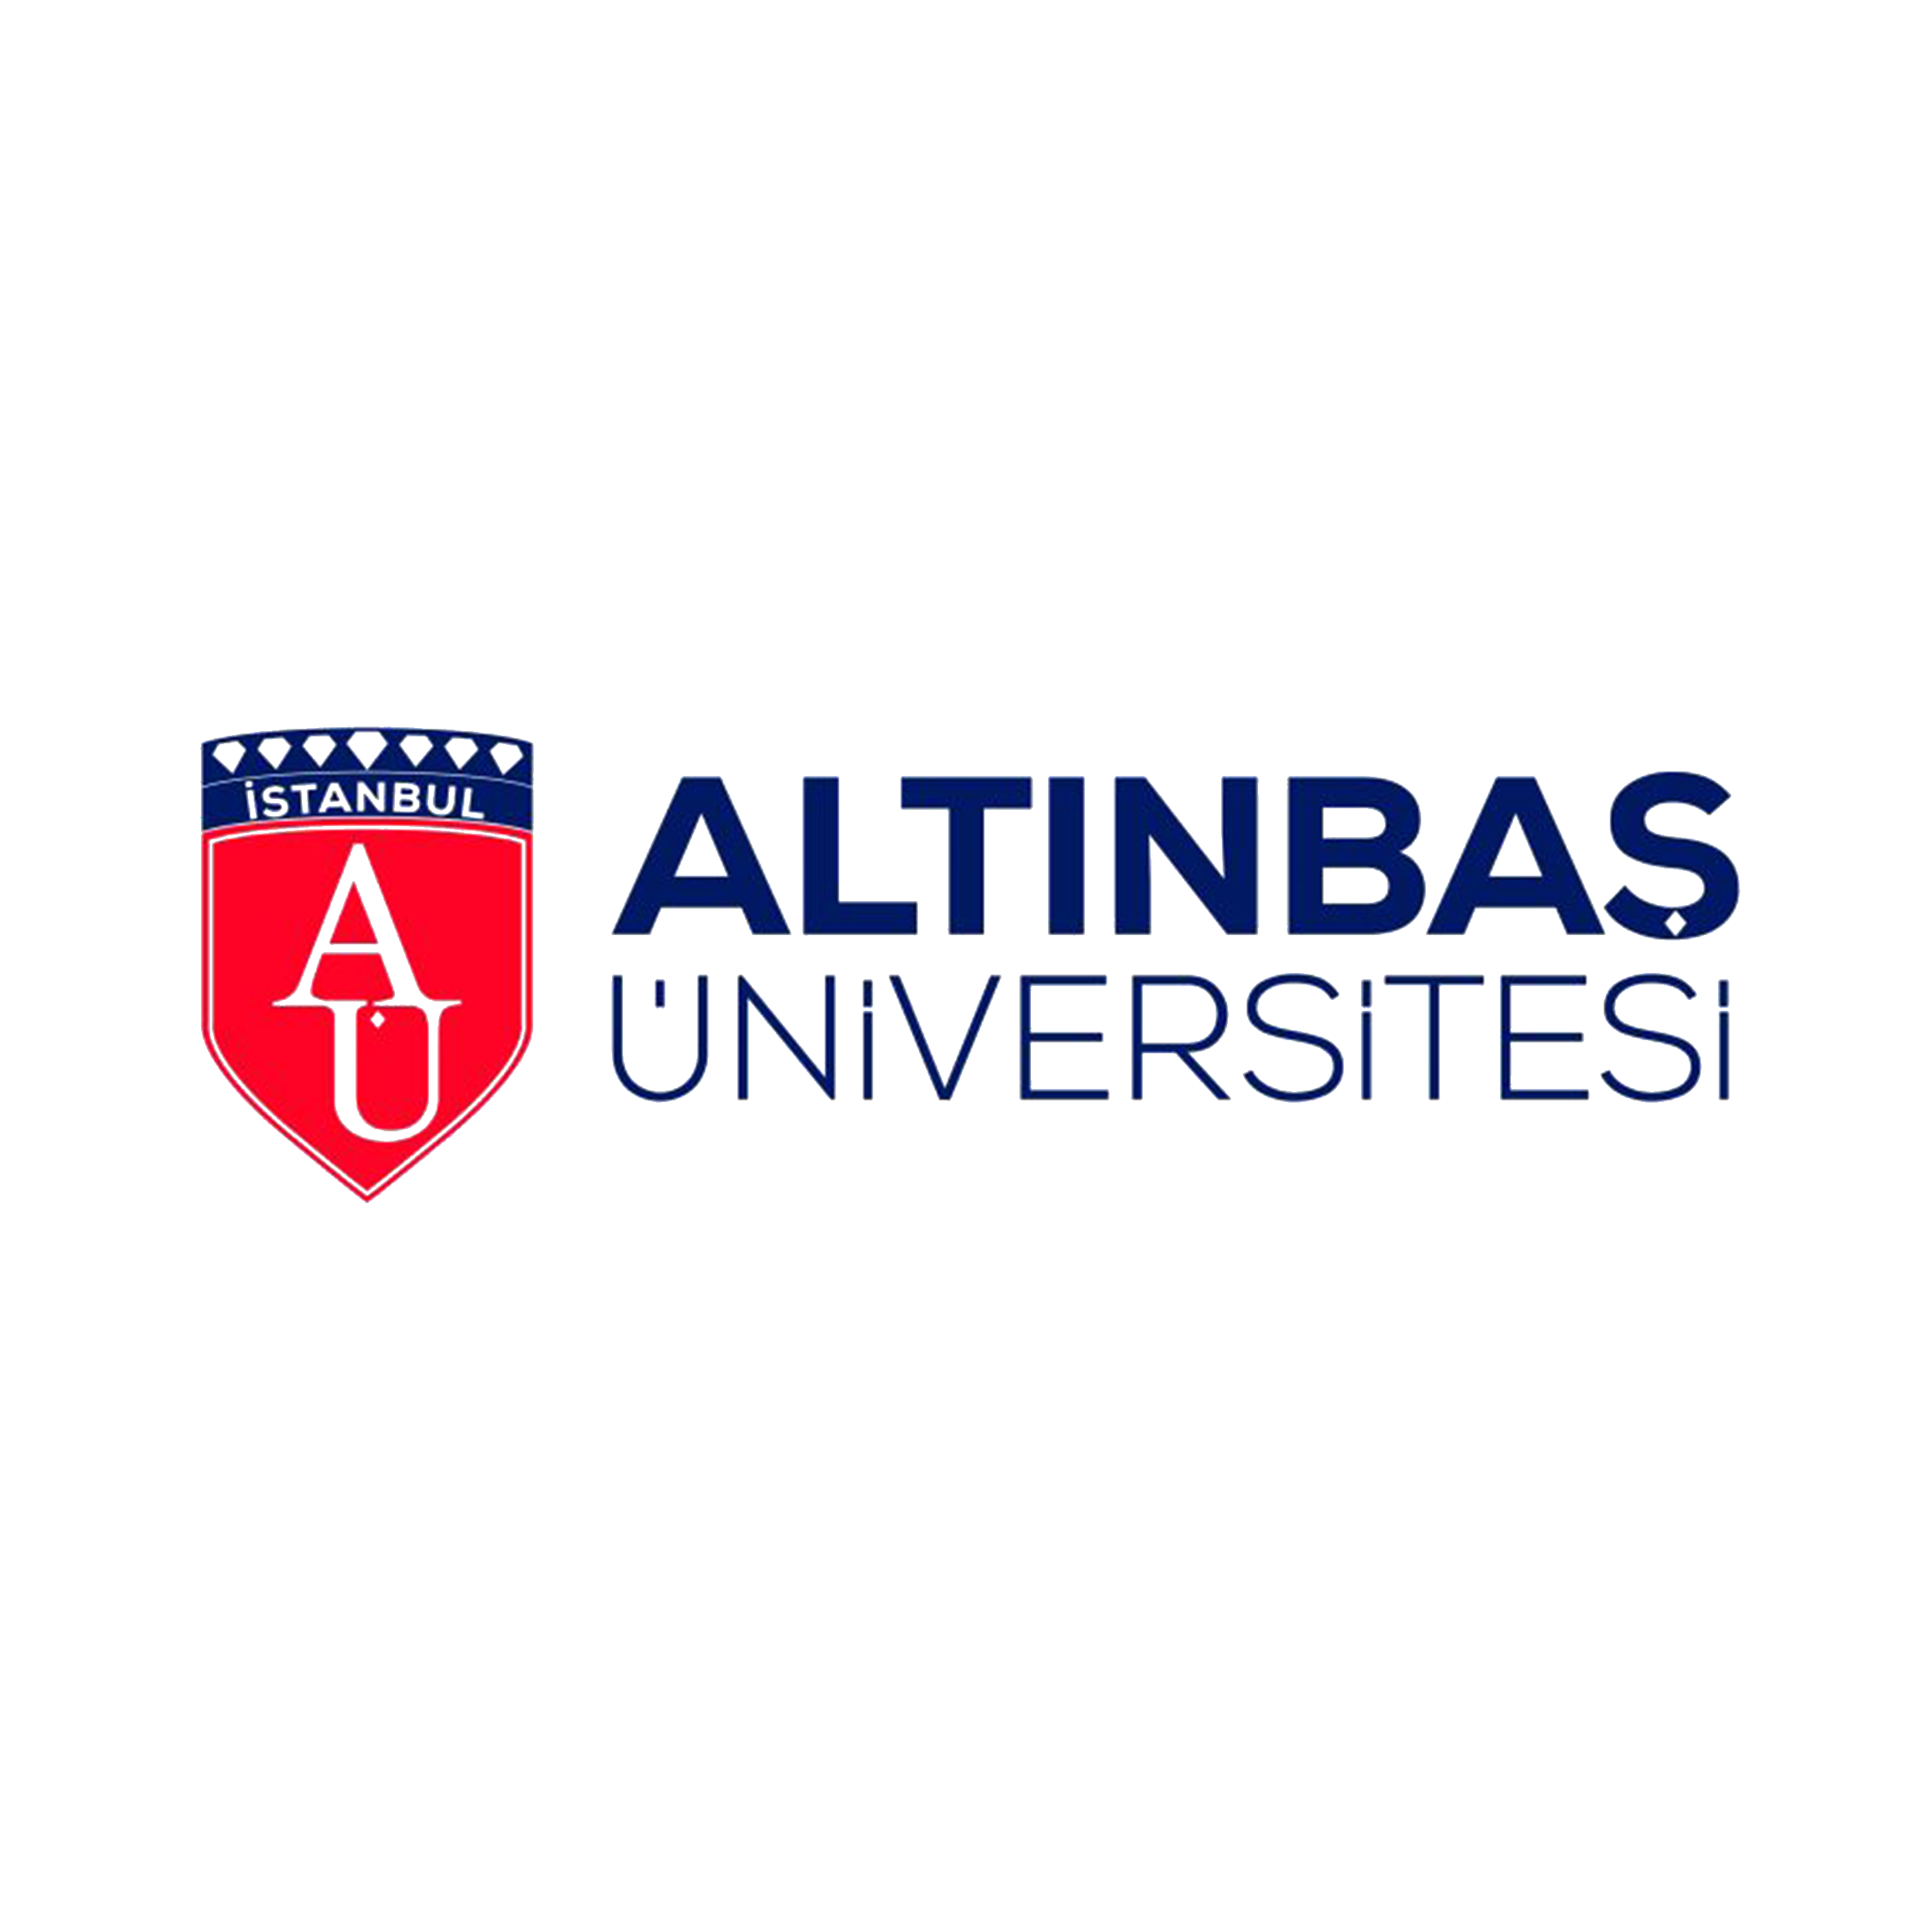 Altinbaş University